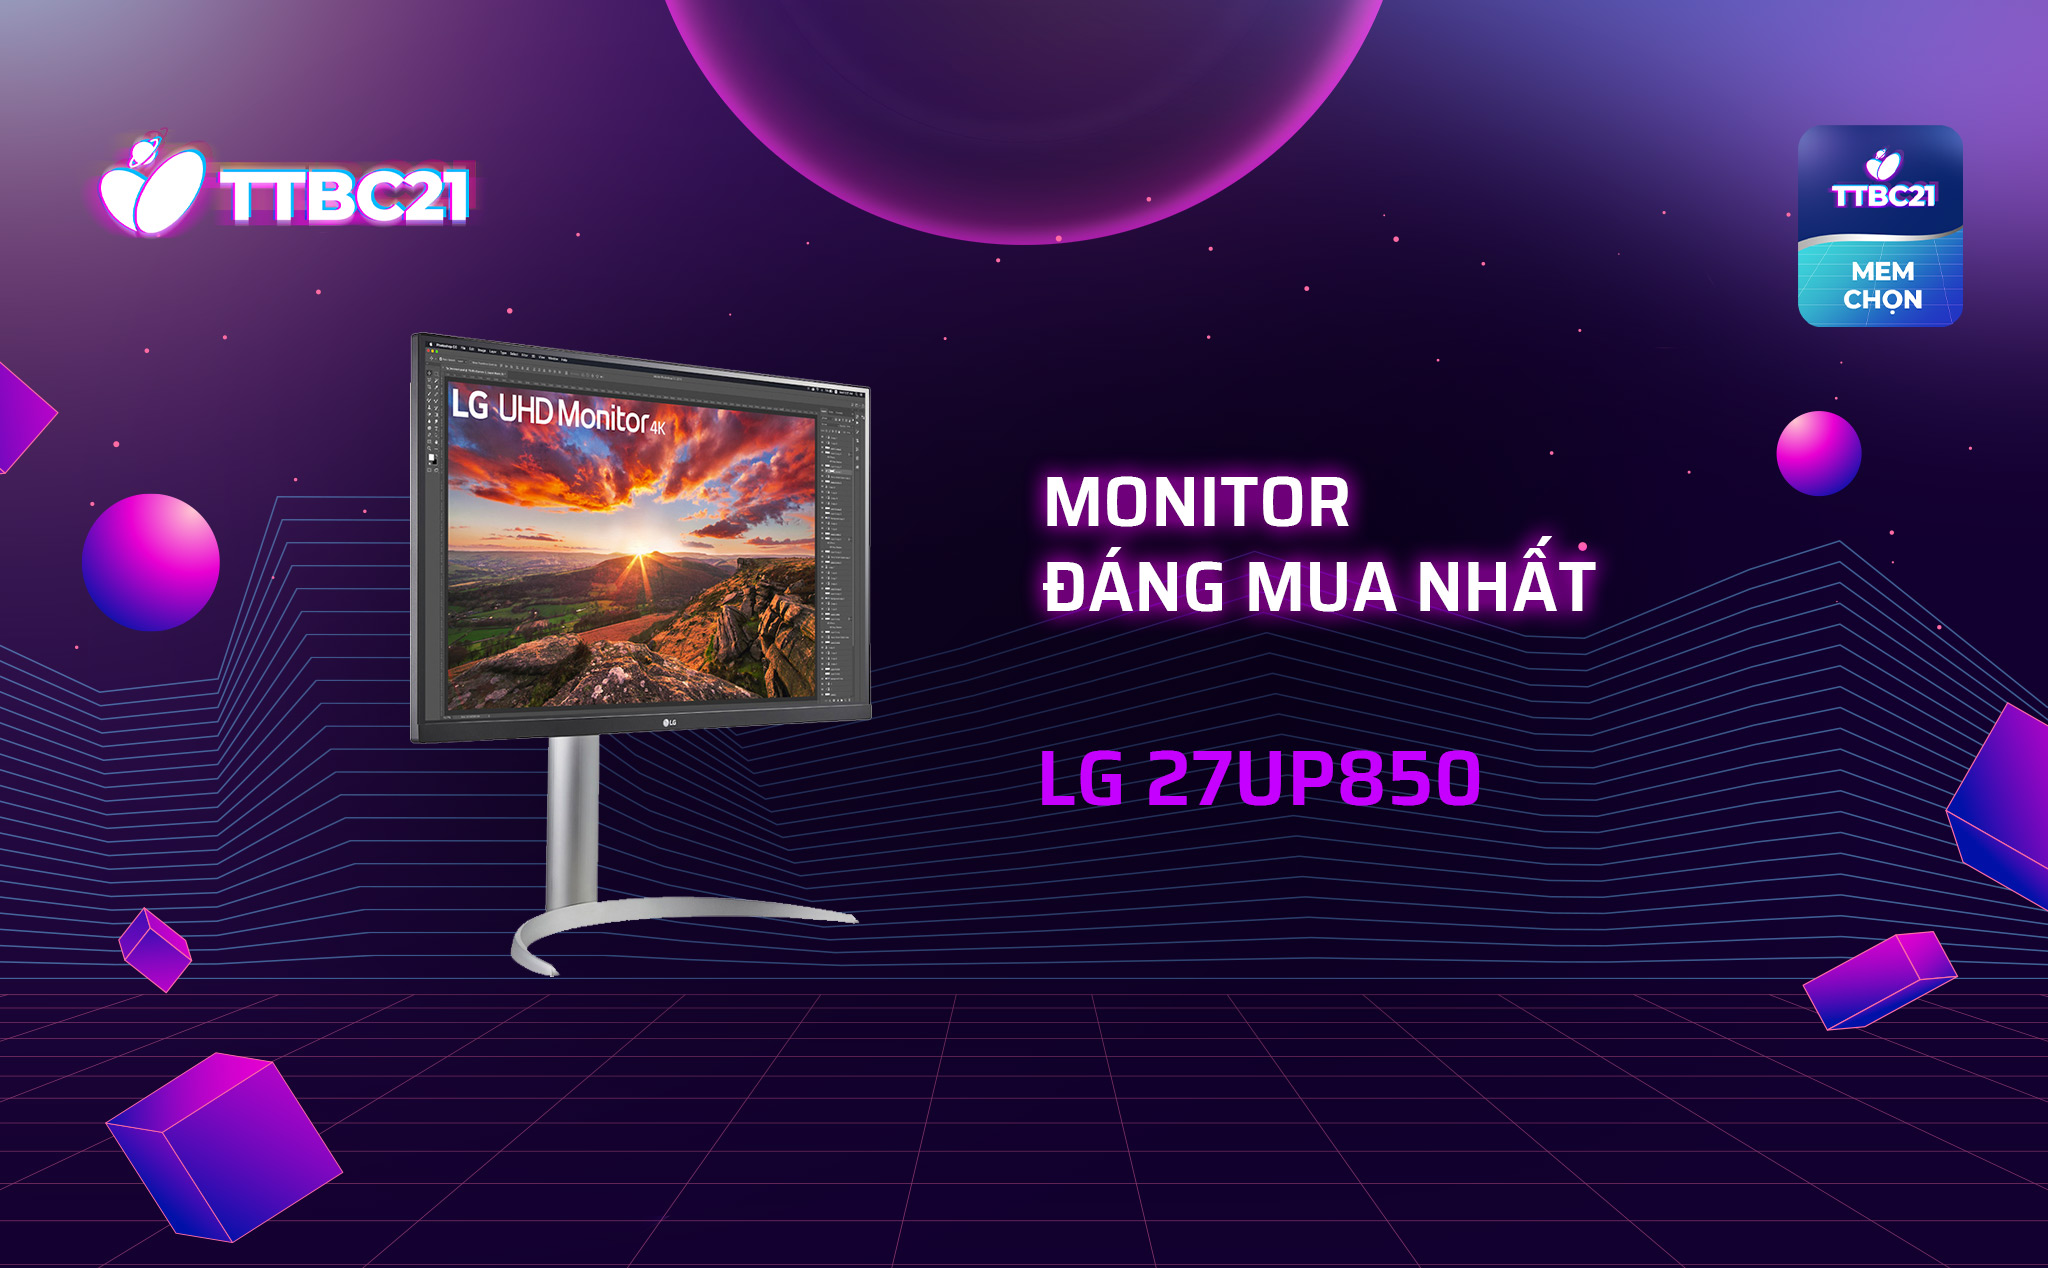 monitor đáng mua nhất - lg 27up850.jpg